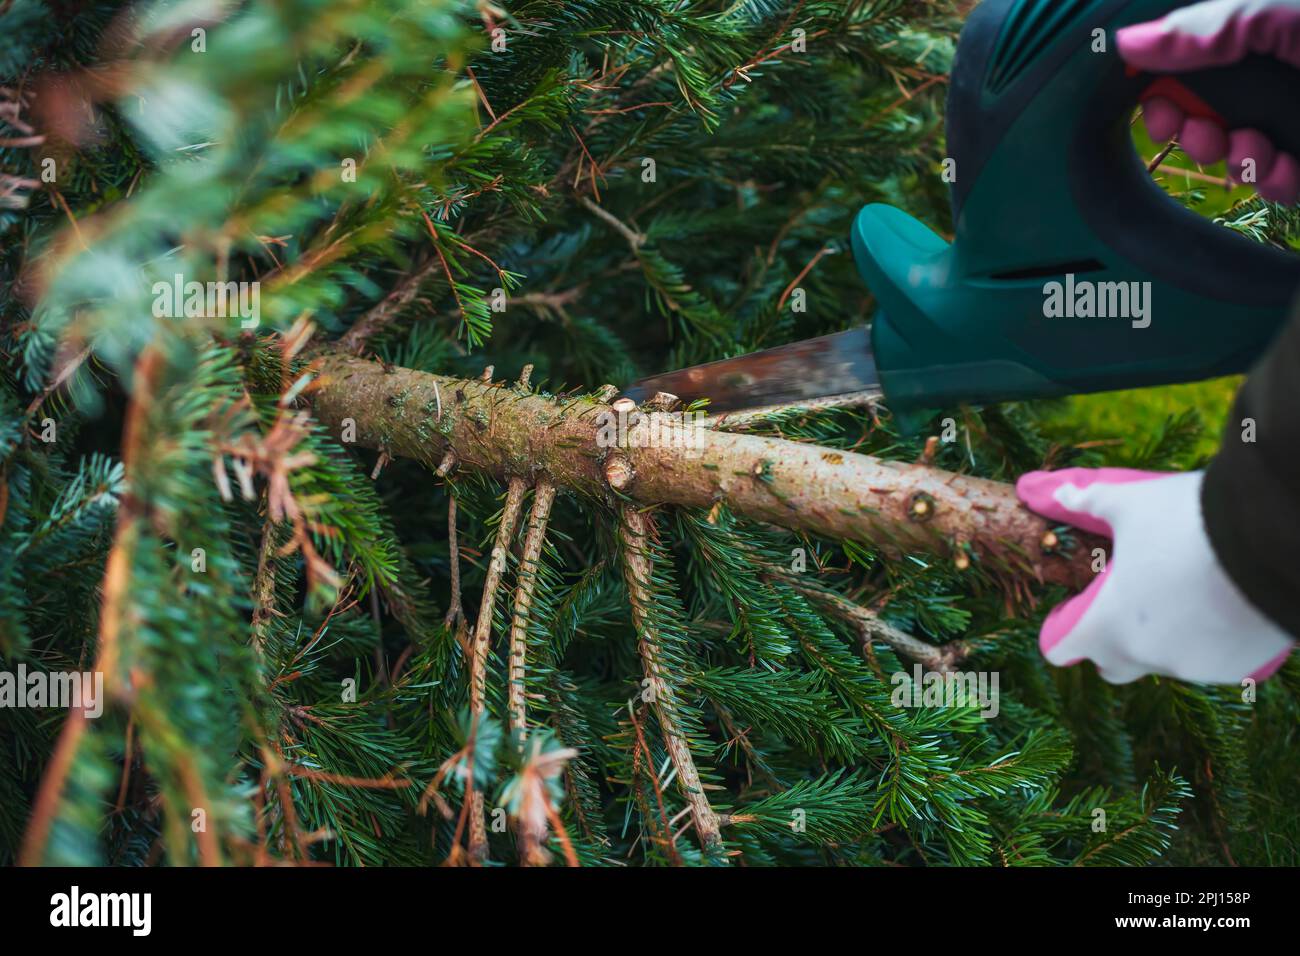 Gartenarbeit im Herbst und Winter. Ein Teenager sägt einen alten Weihnachtsbaum mit einer elektrischen Säge und schneidet Äste. Stockfoto